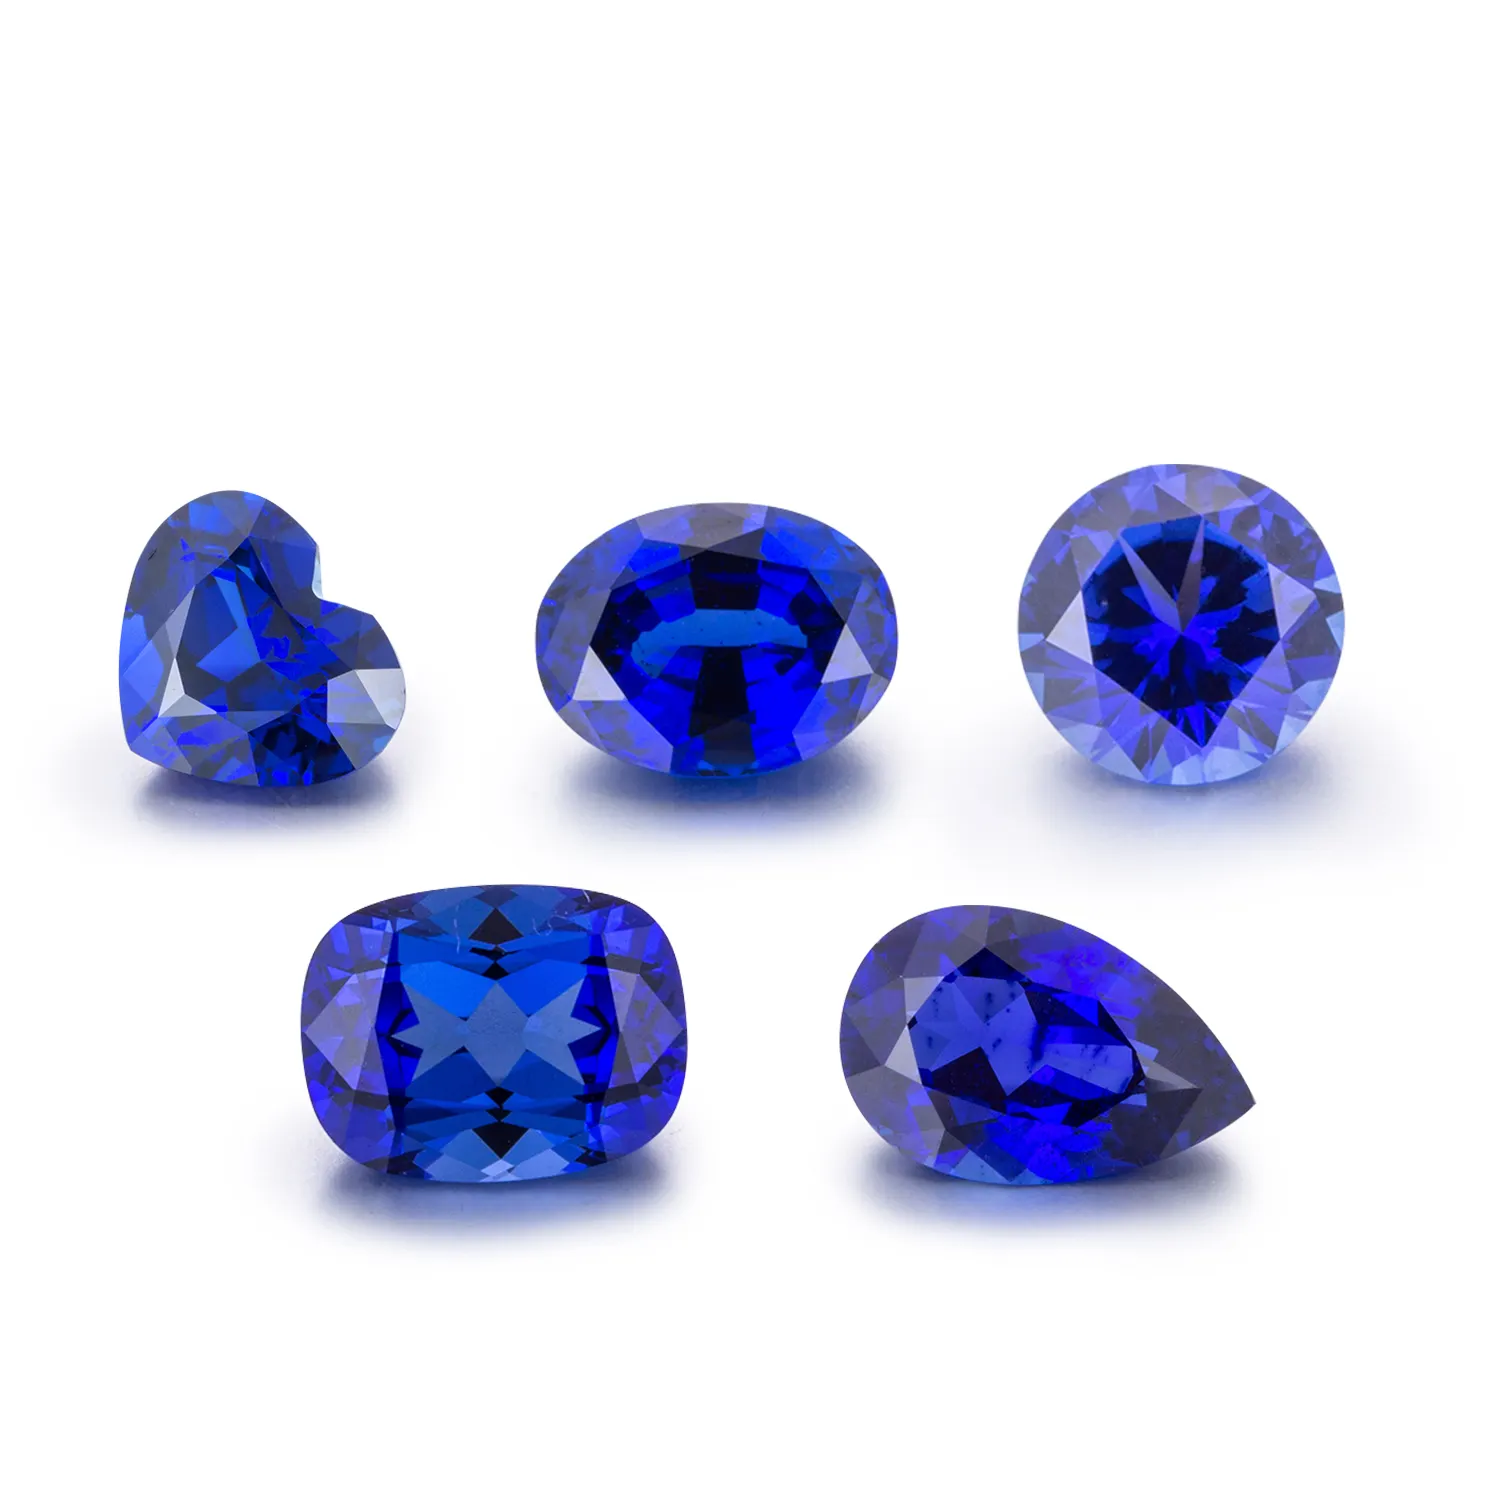 Bloc de saphir synthétique de qualité supérieure, pierre de sodalite bleue, granit et saphir, prix usine